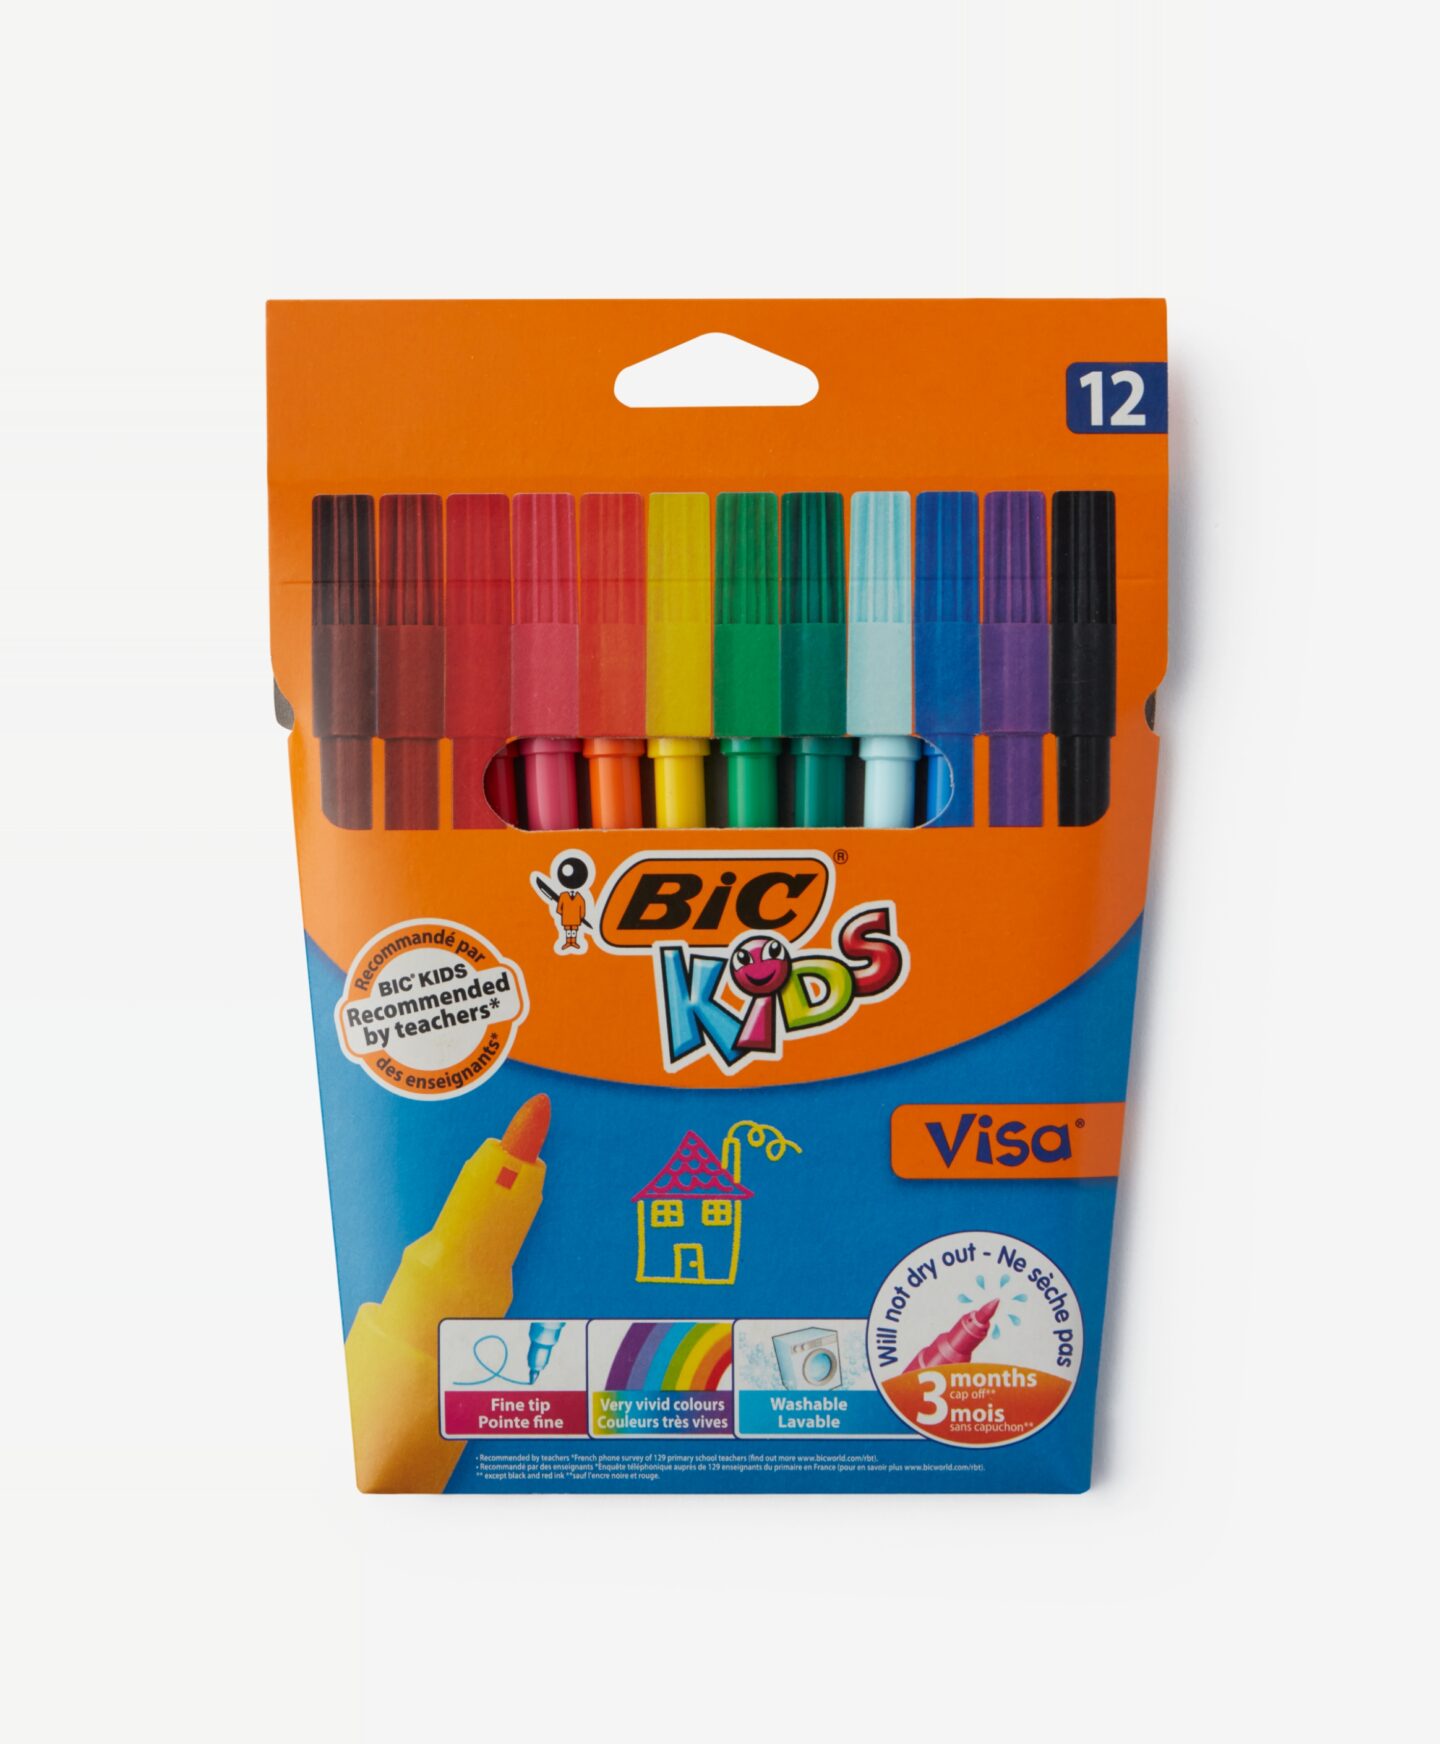 Flamastry BiC® 12 szt z łatwo spieralnym tuszem wodnym niewysychające, różne kolory